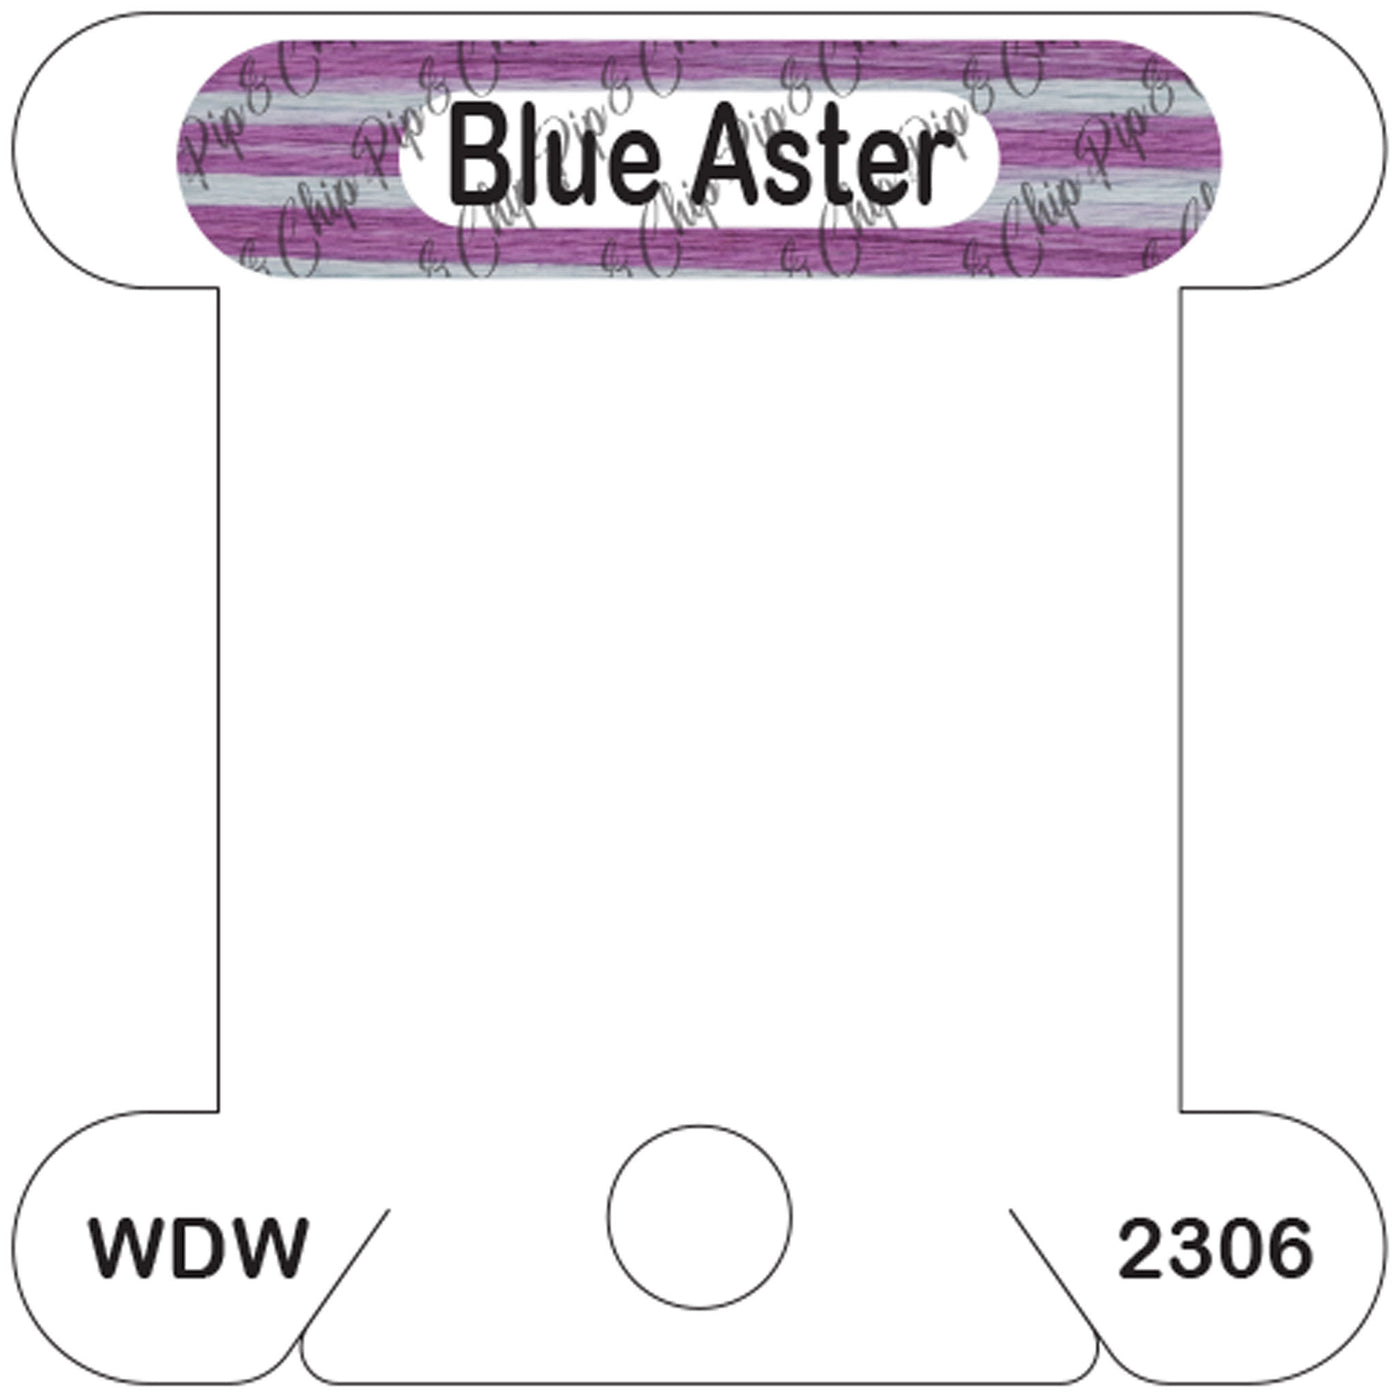 WDW Blue Aster acrylic bobbin